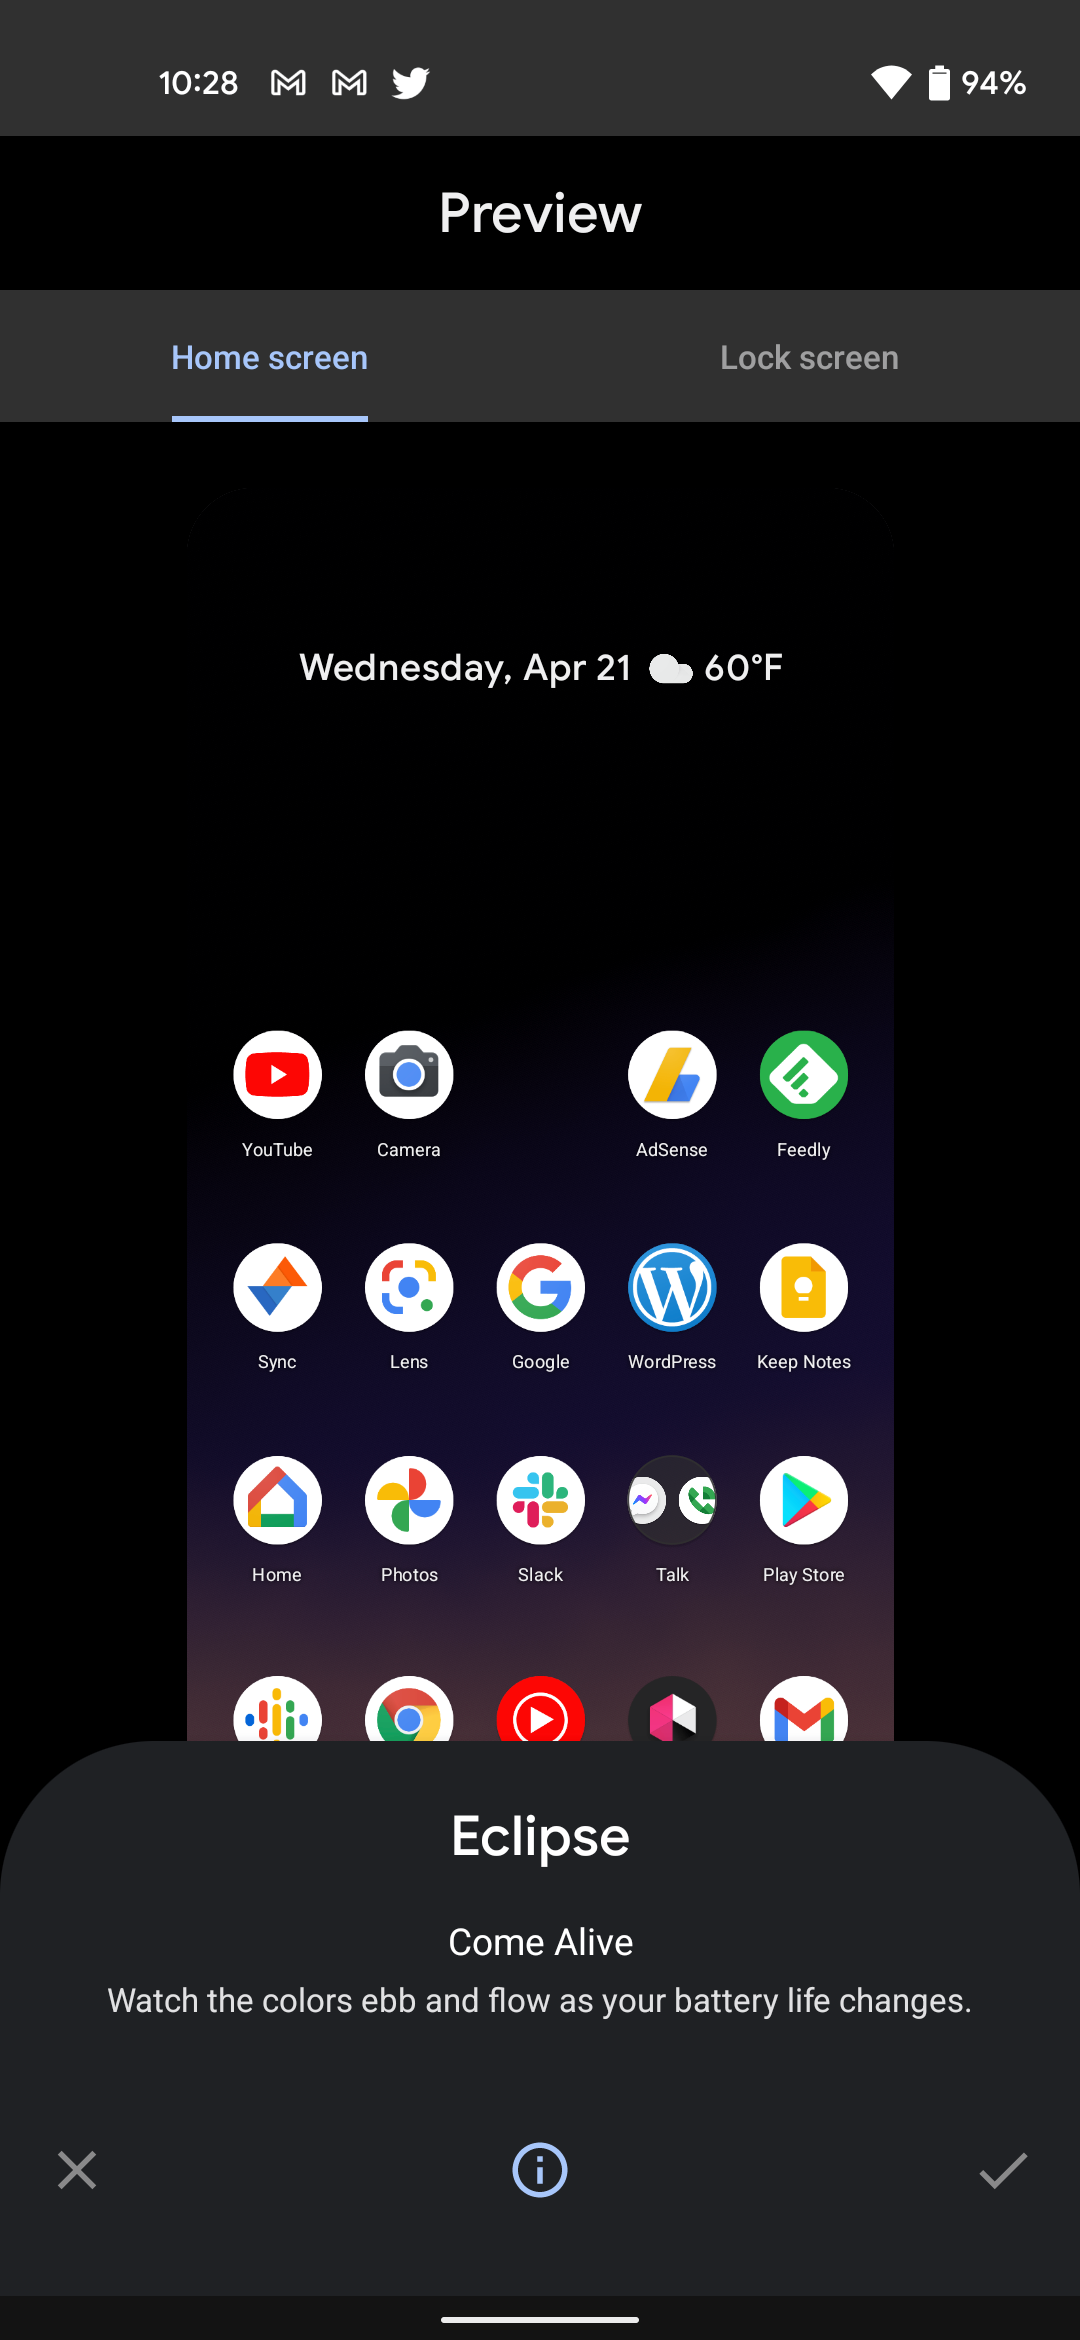 รวม 15 ความเปลี่ยนแปลงที่น่าสนใจใน Android 12 DP3 หน้าตา UI ใหม่เอี่ยม